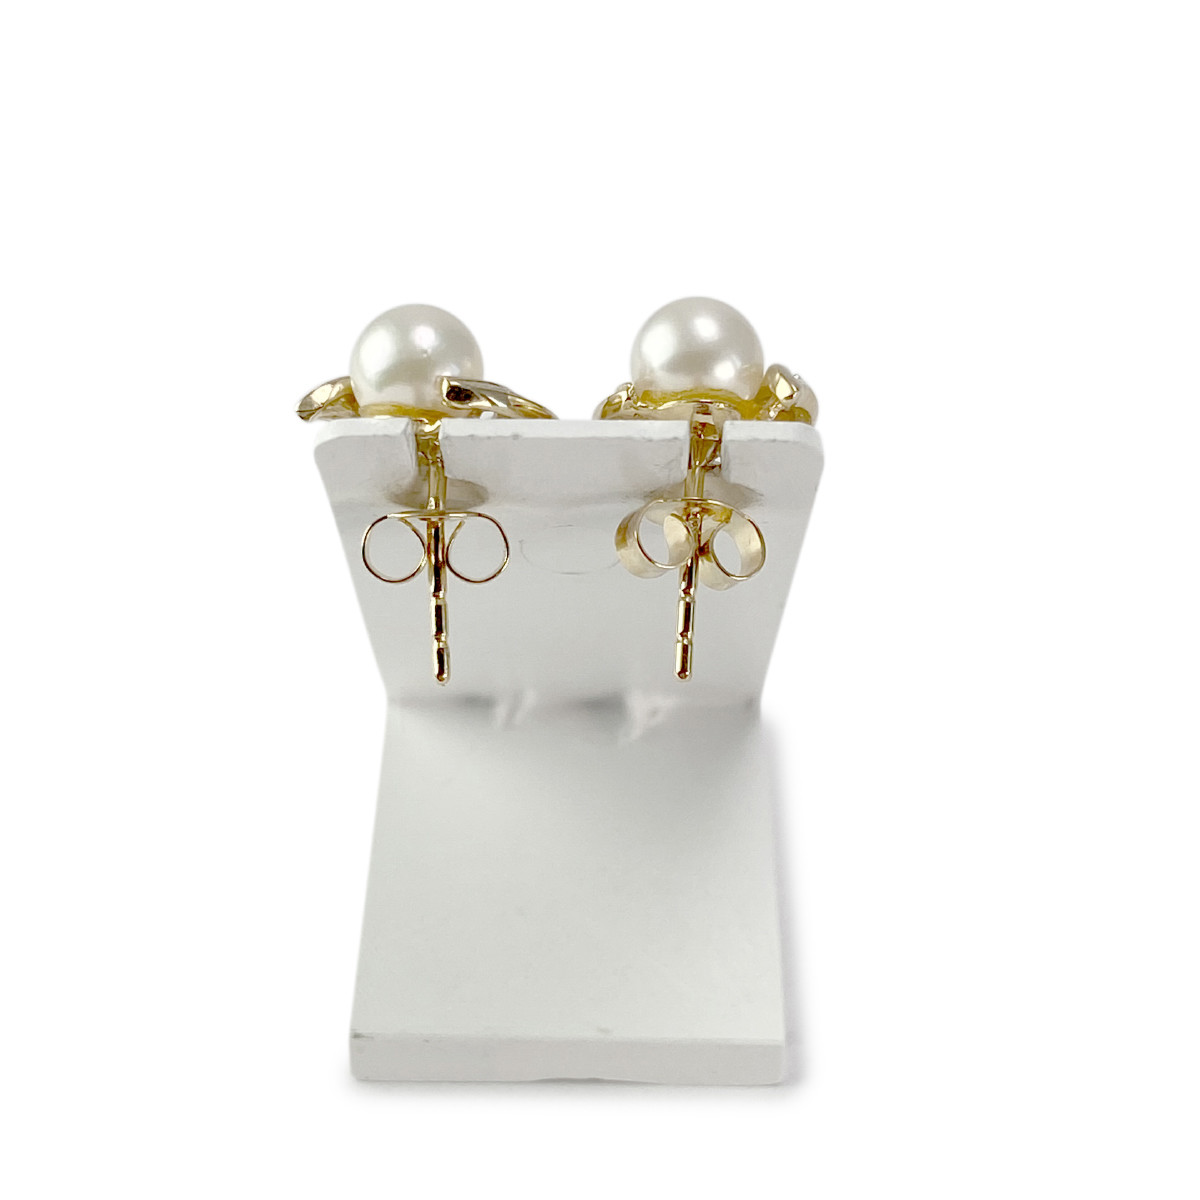 Boucles d'oreilles d'occasion or 750 jaune et rhodié diamants perles de culture - vue 3